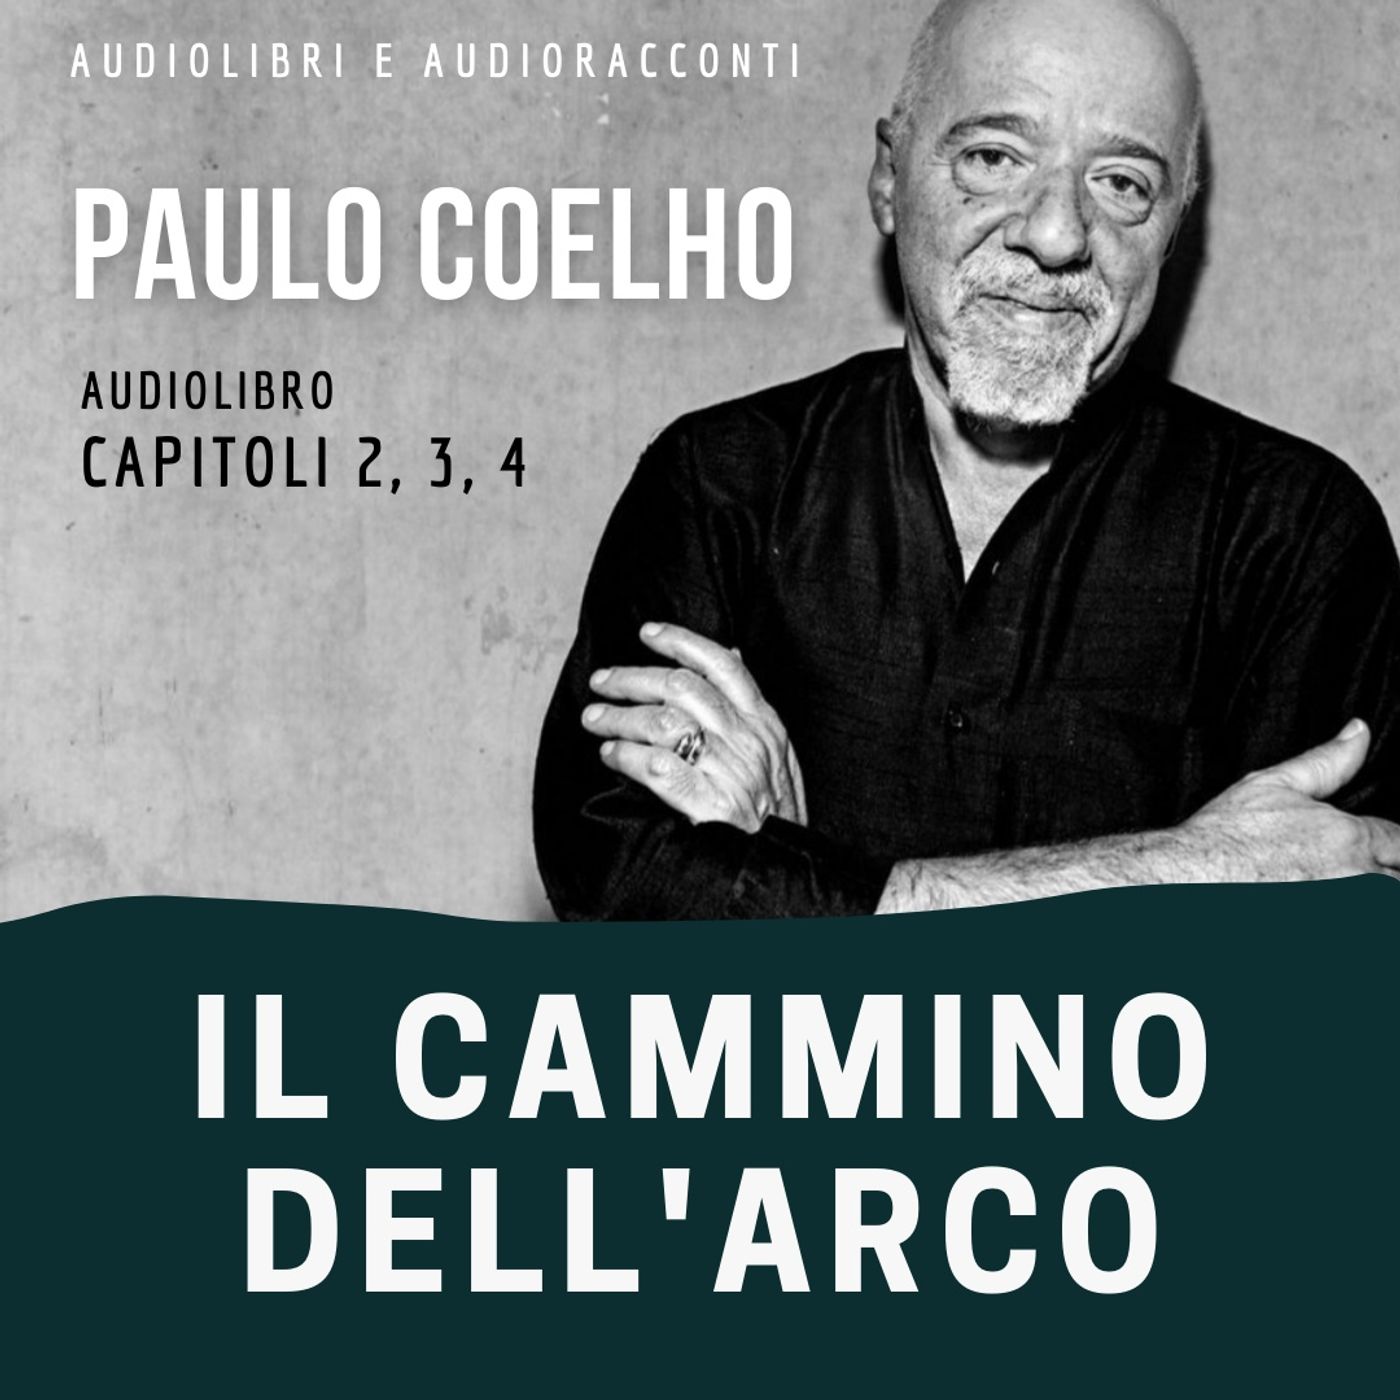 Il cammino dell'arco di Paulo Coelho [capitoli 2, 3, 4] - Audiolibro